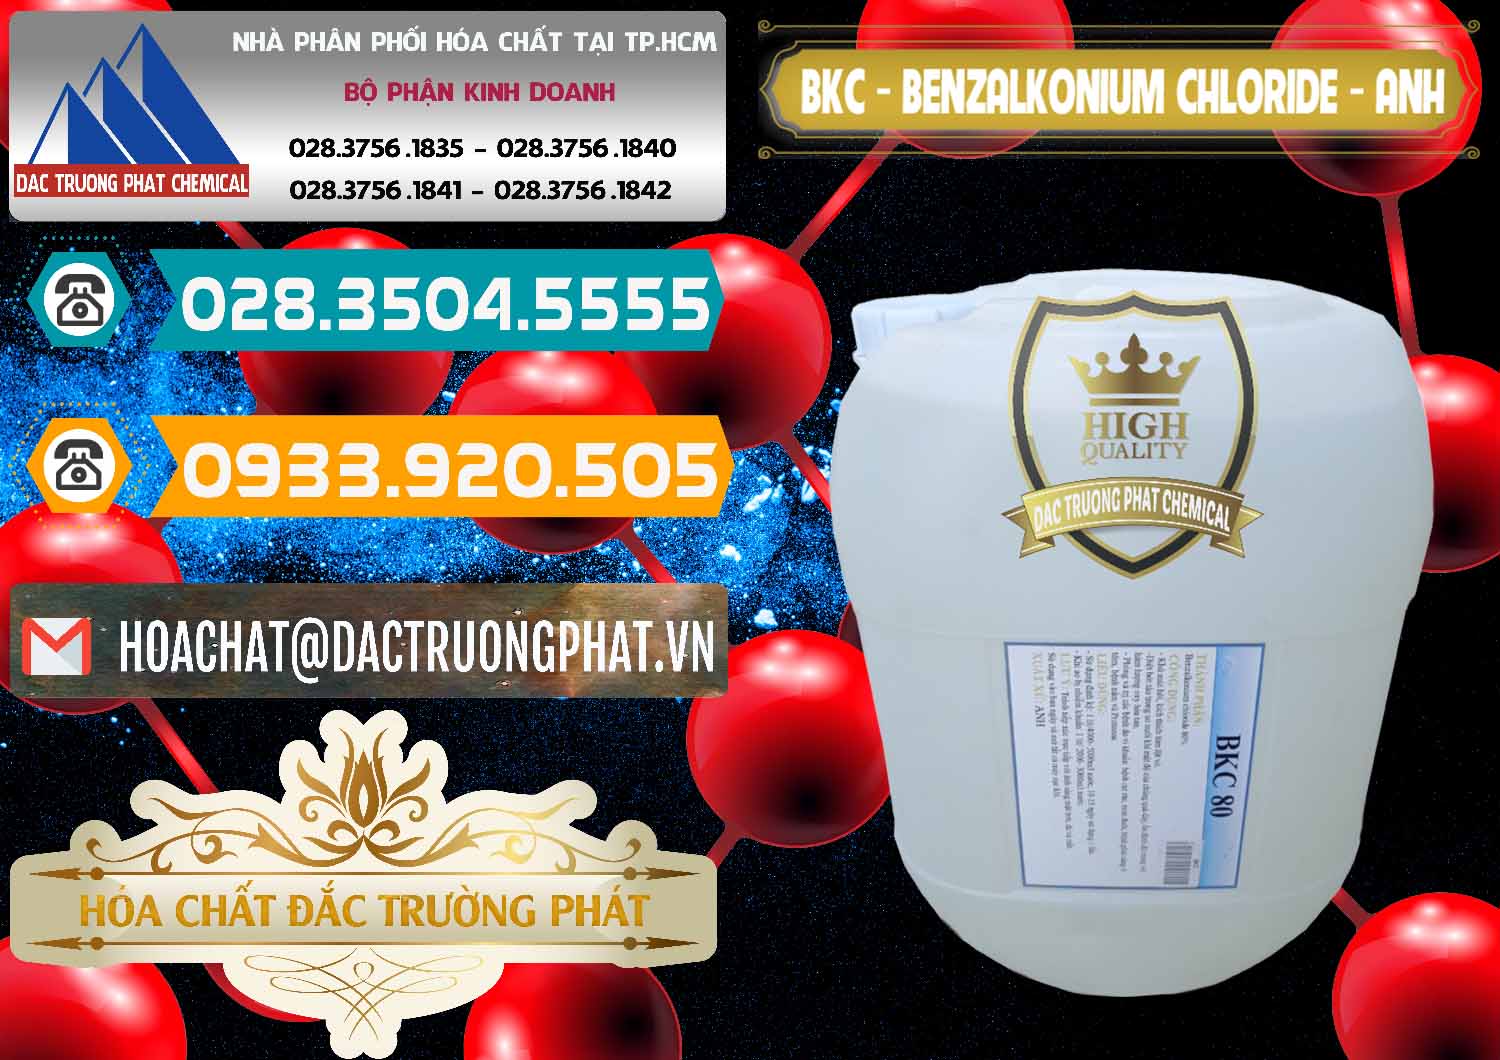 Cty nhập khẩu và bán BKC - Benzalkonium Chloride Anh Quốc Uk Kingdoms - 0415 - Nhà cung cấp & phân phối hóa chất tại TP.HCM - congtyhoachat.vn